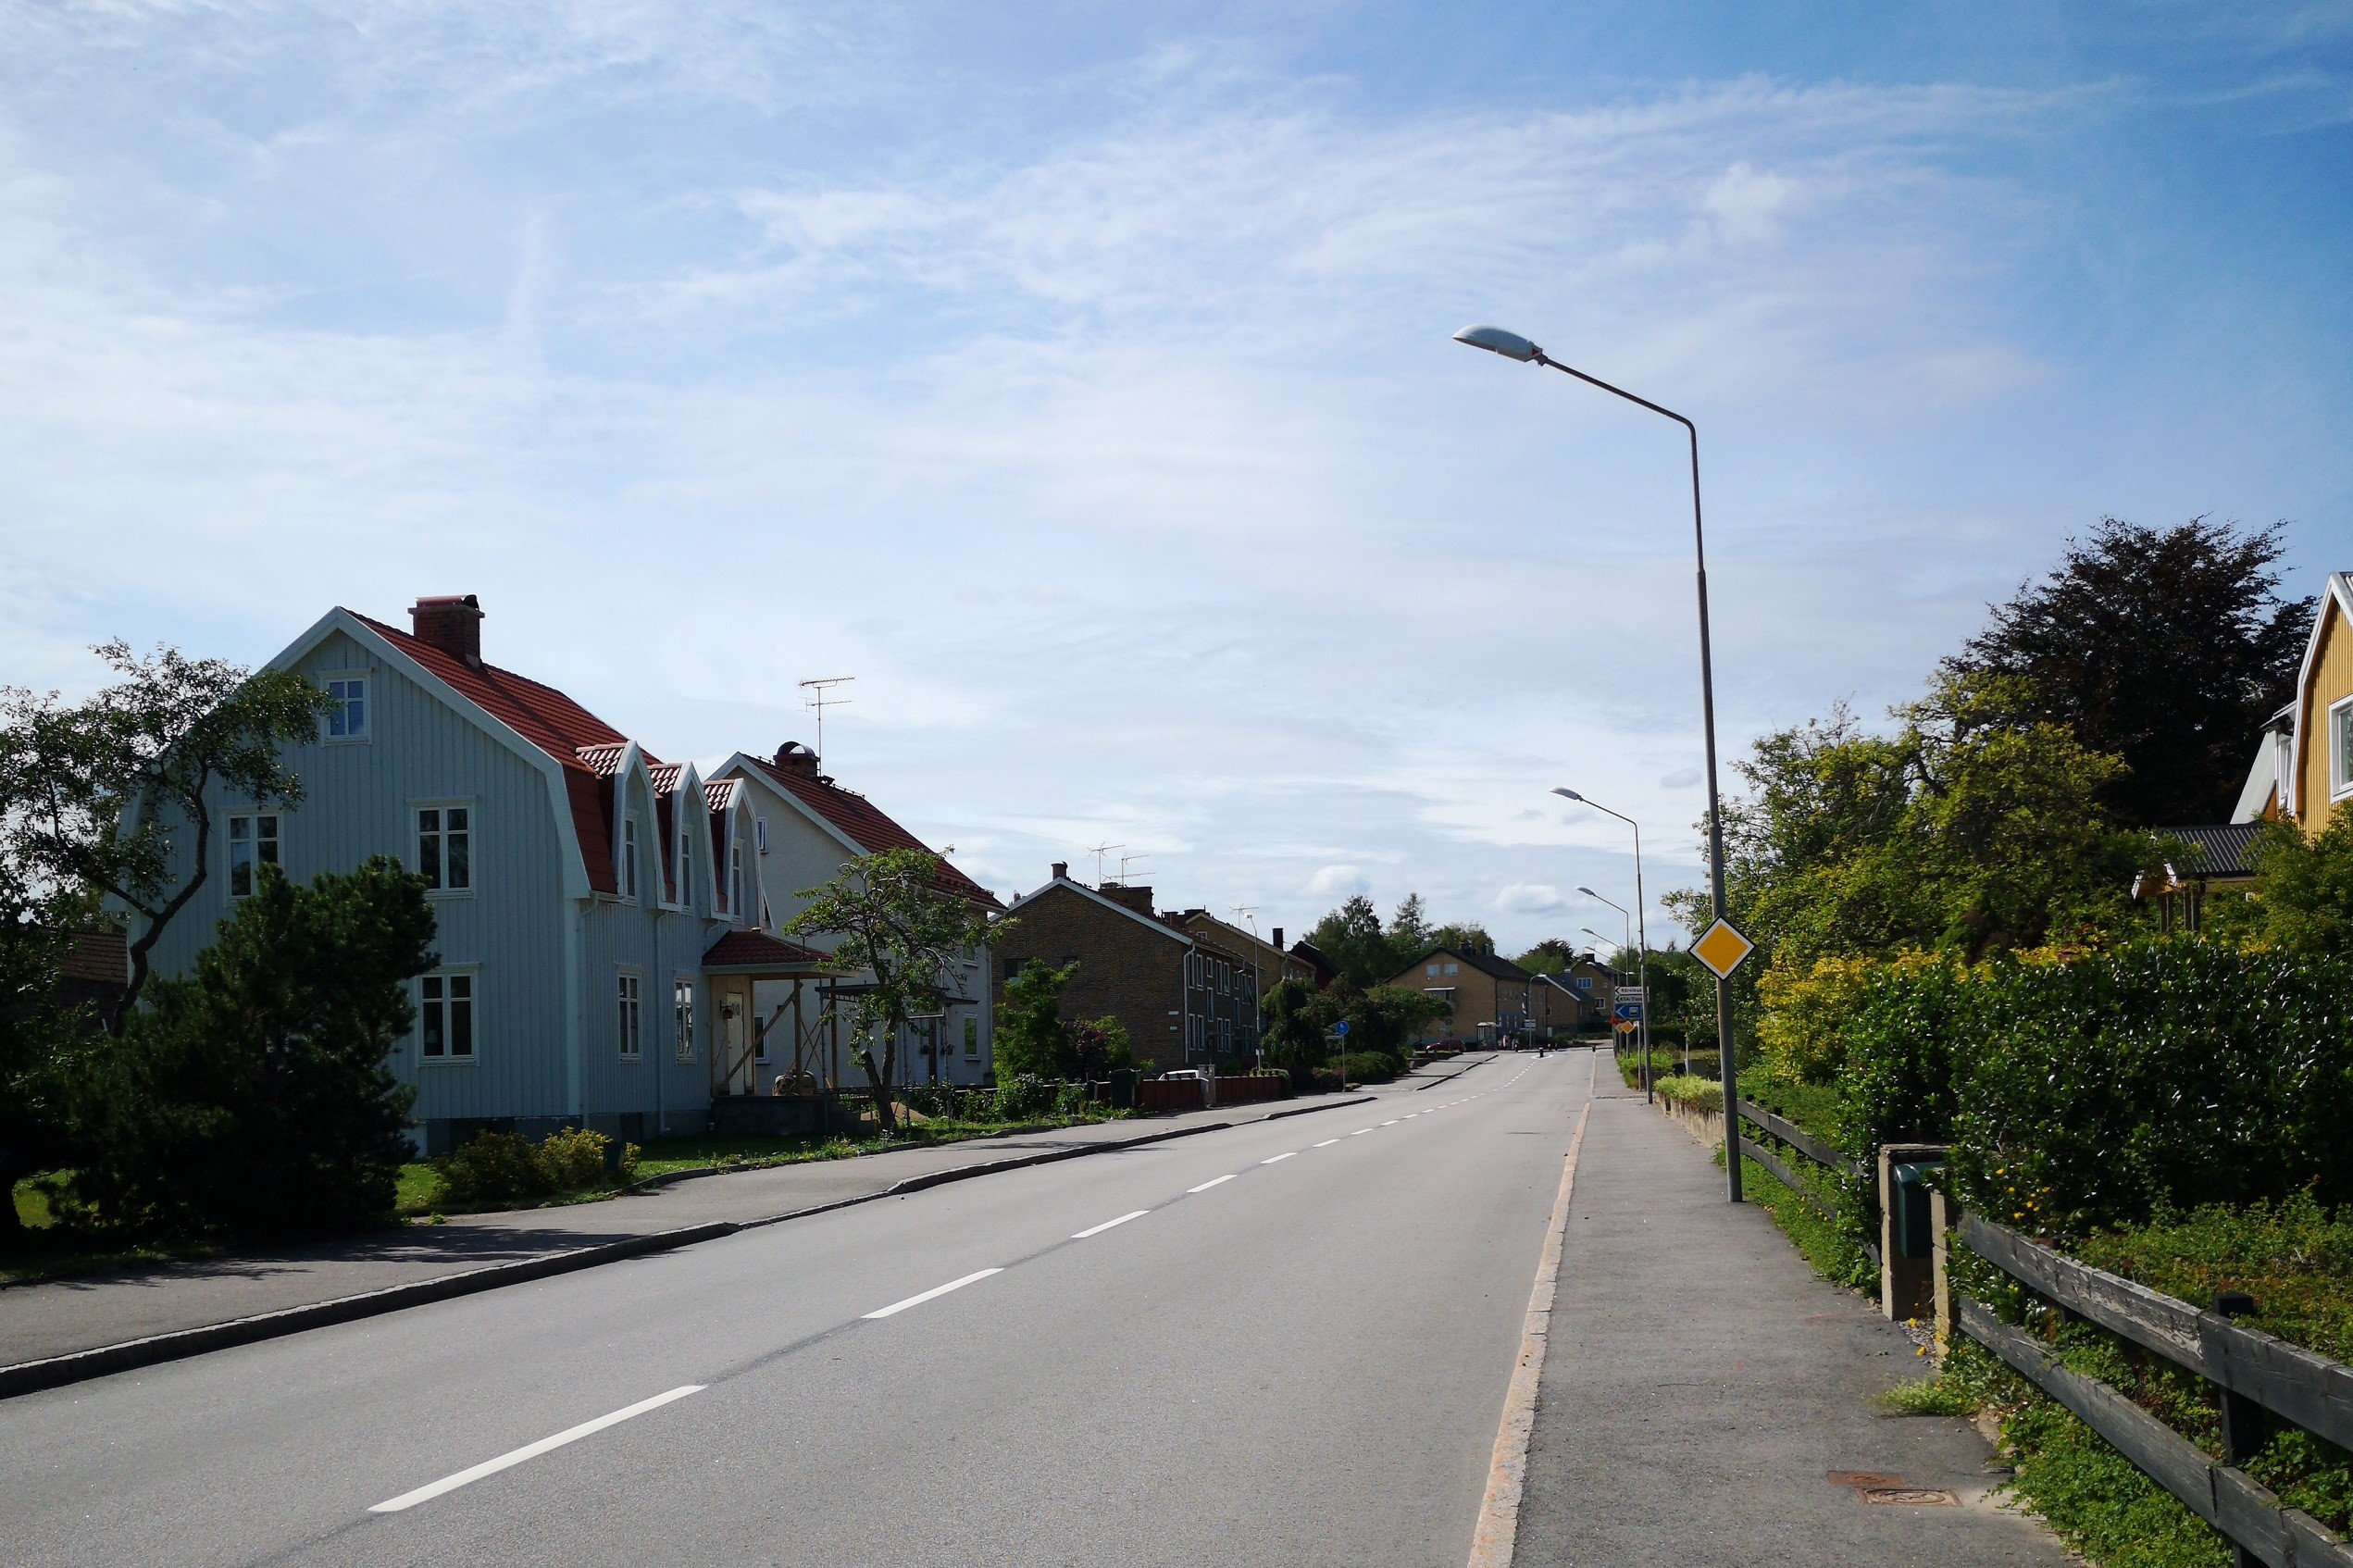 Gata med bostadshus i Rörvik, Småland, en solig sommardag.